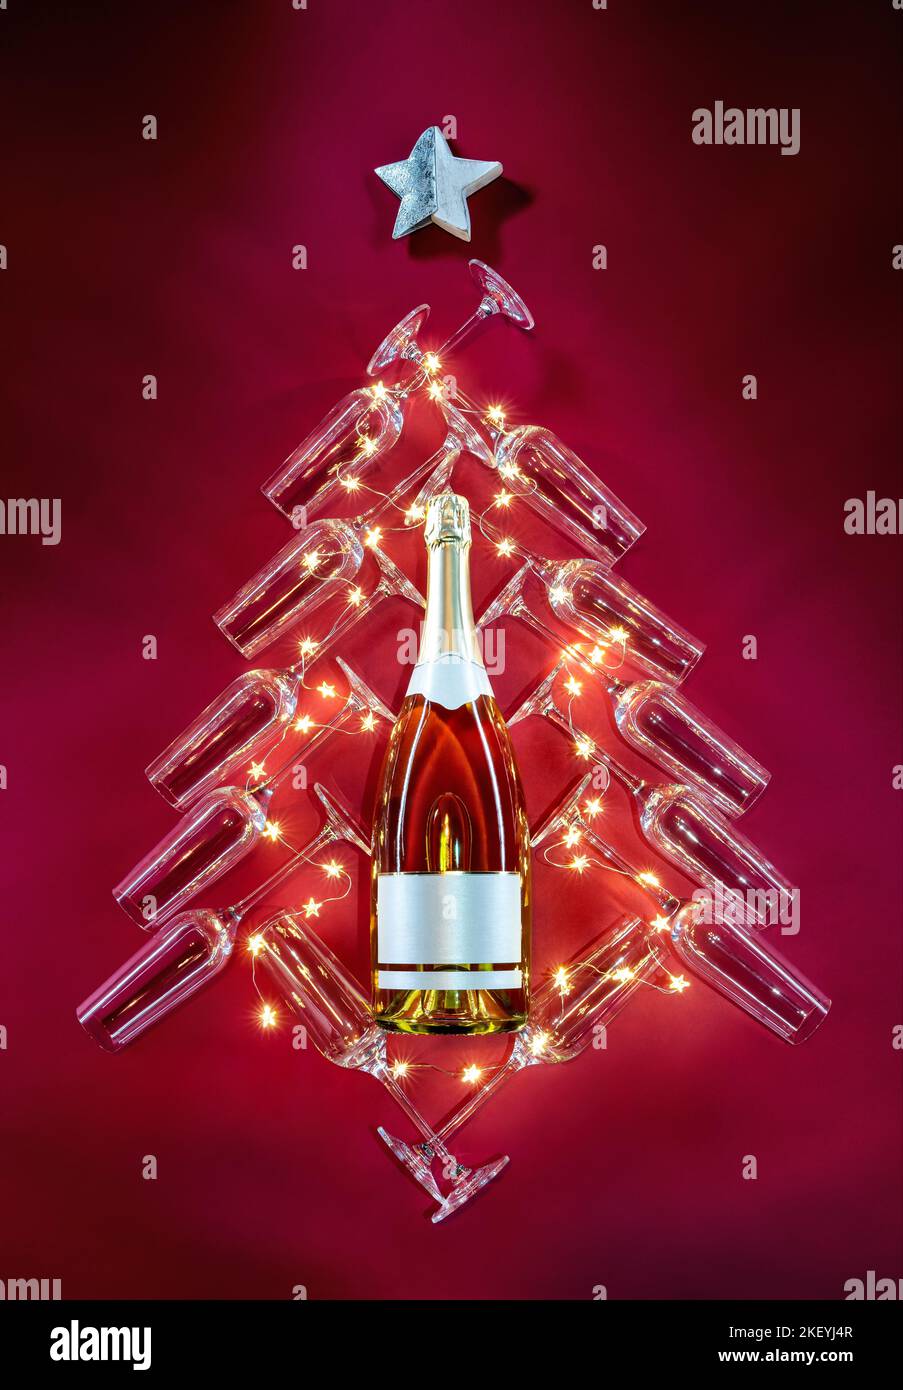 Silhouette eines festlichen Baumes, eine Flasche Champagner, umgeben von Gläsern und Sternen auf rotem Hintergrund. Frohe Weihnachten und ein glückliches neues Jahr Konzept Stockfoto